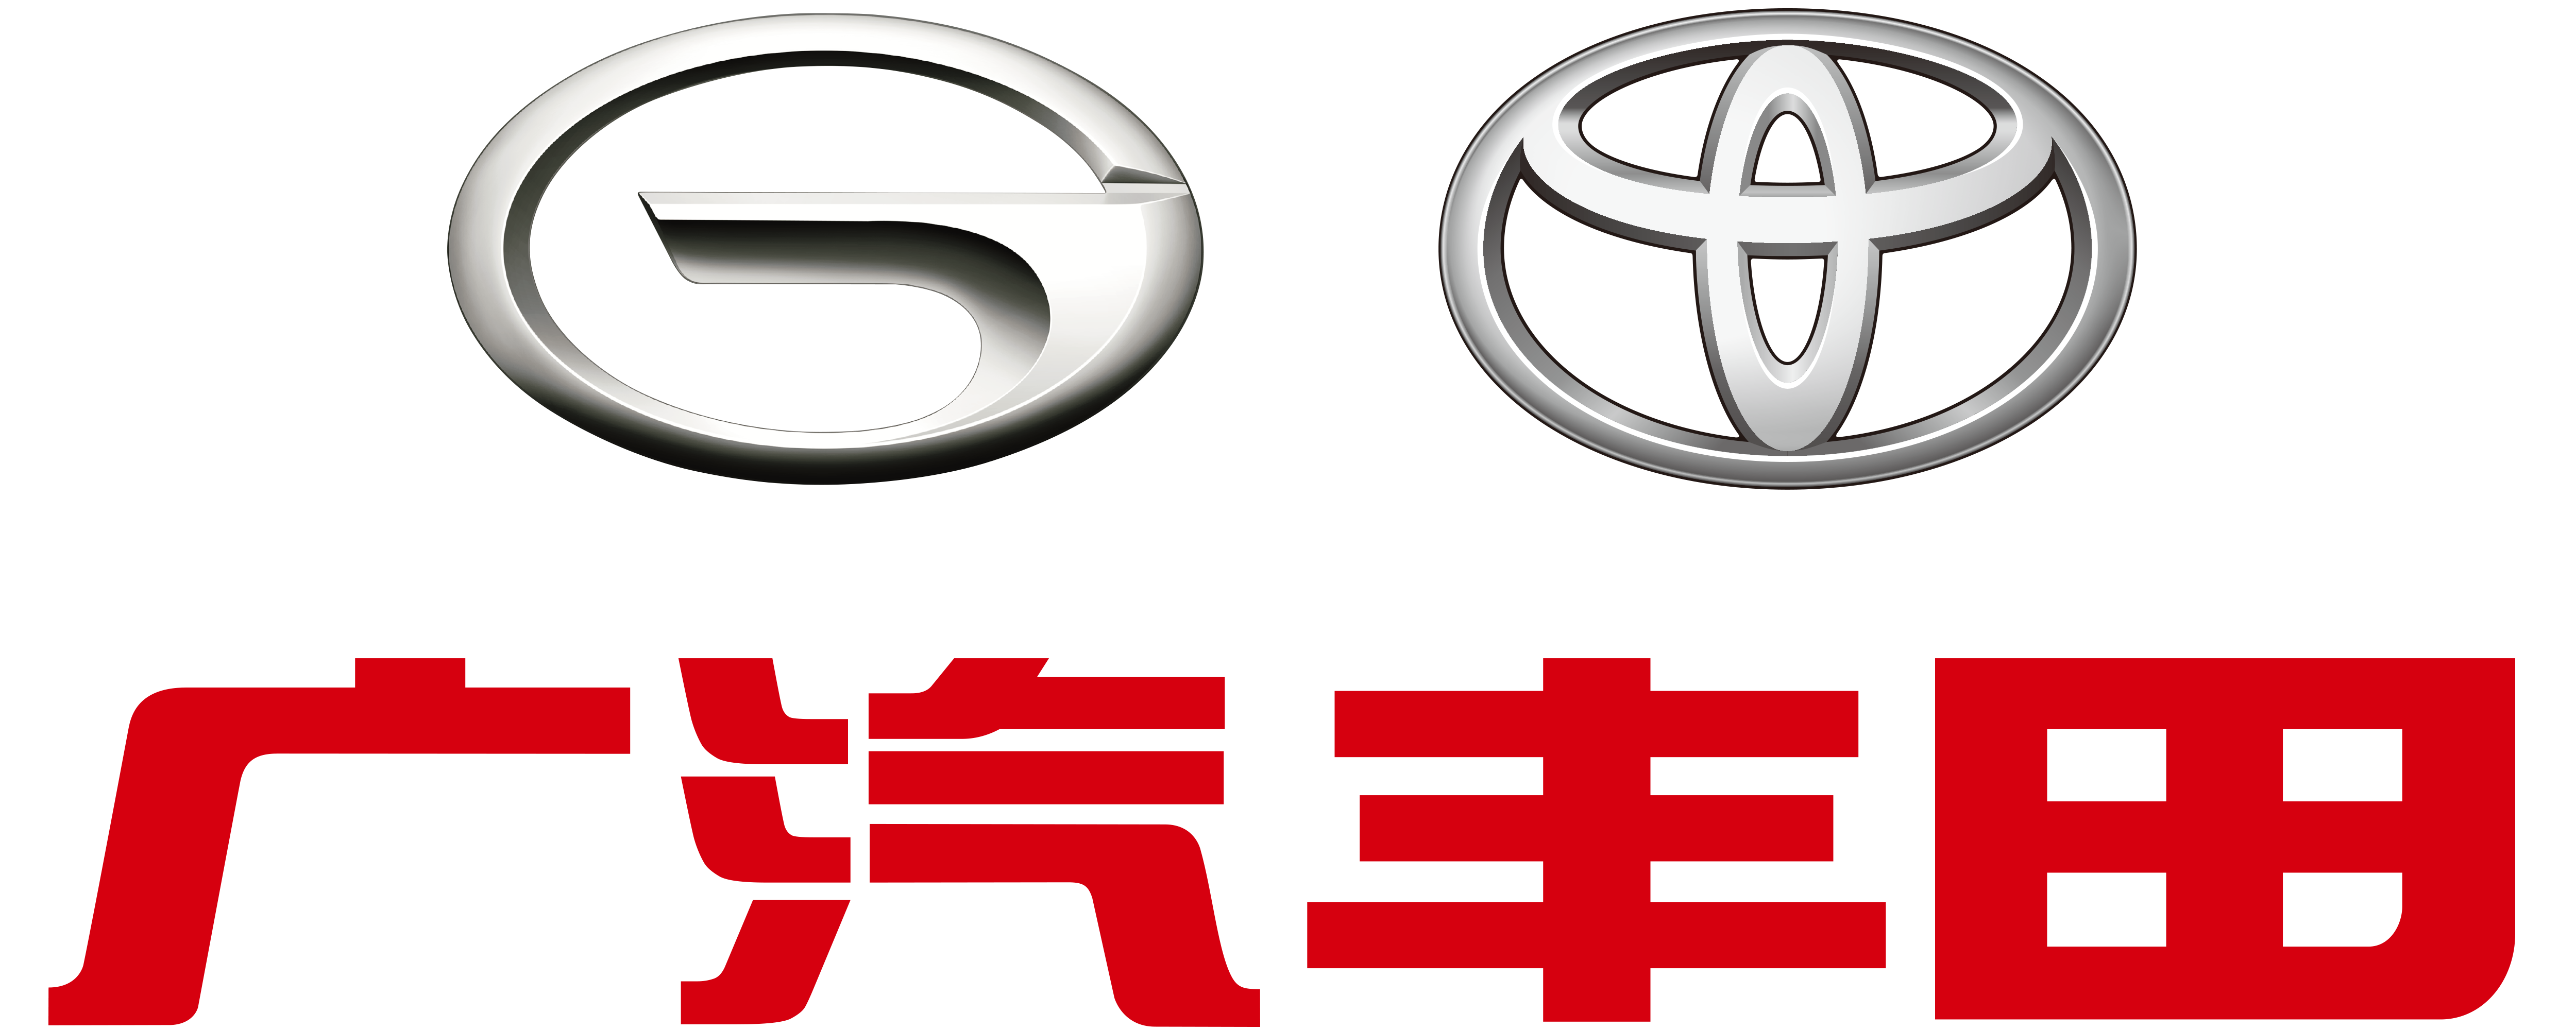 广汽丰田logo矢量图图片